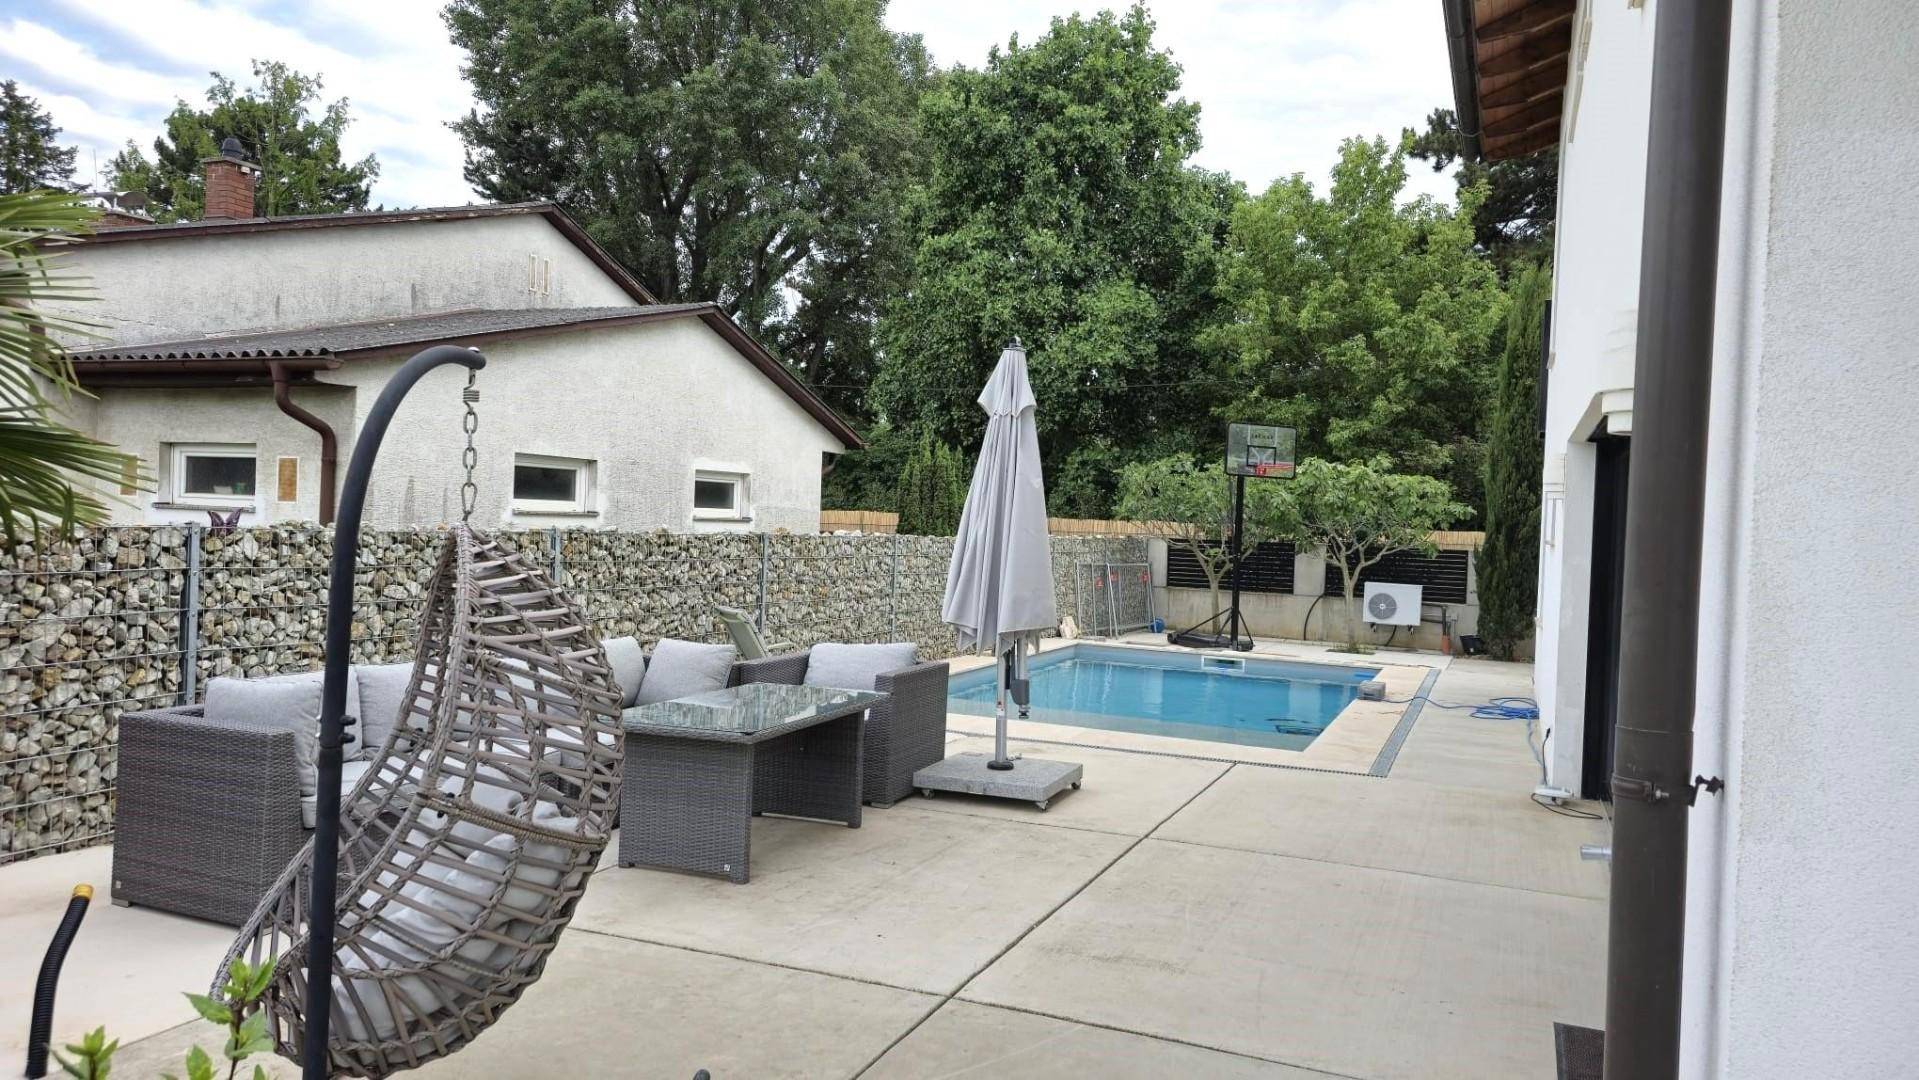 Terrasse mit Pool ausgestattet